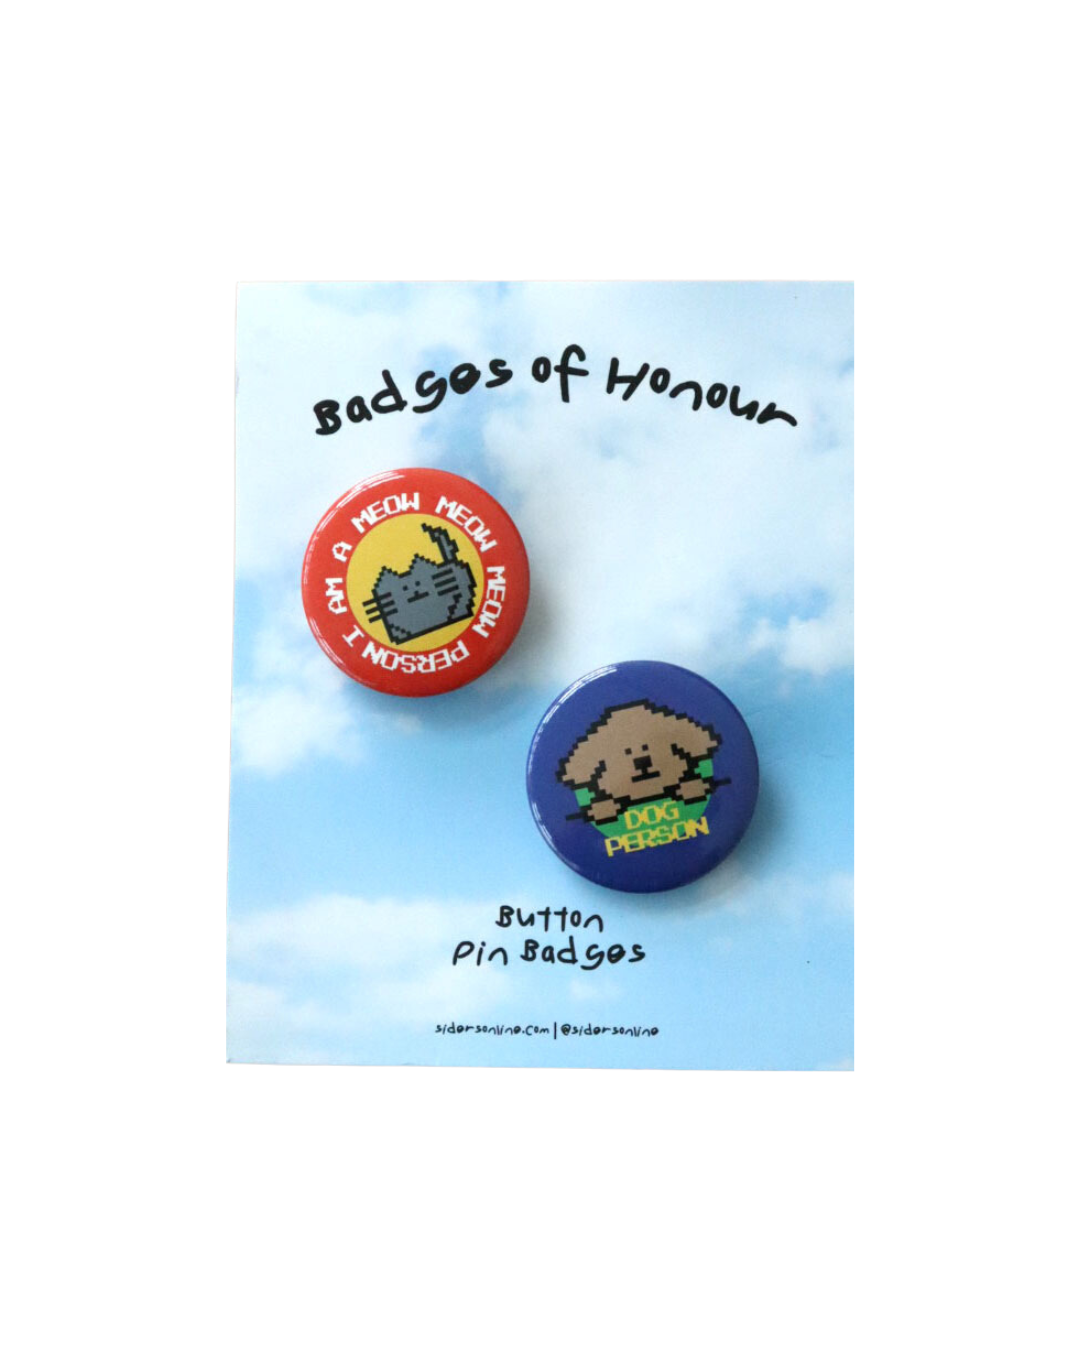 Retro Pin Badges